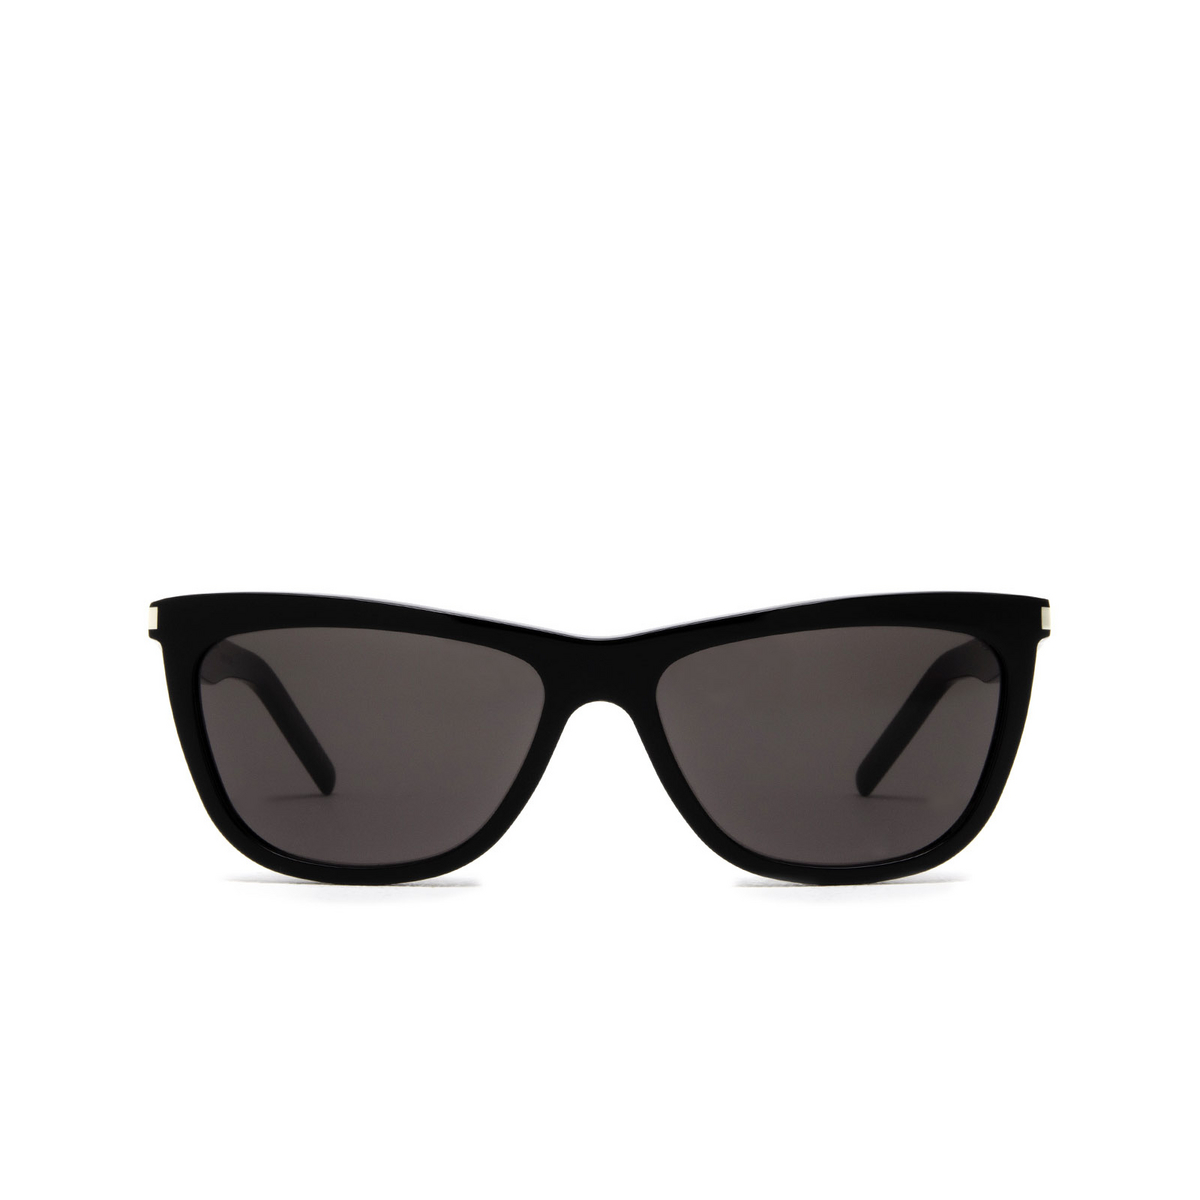 Saint Laurent® Cat-eye Sunglasses: SL 515 color Black 001 - front view.